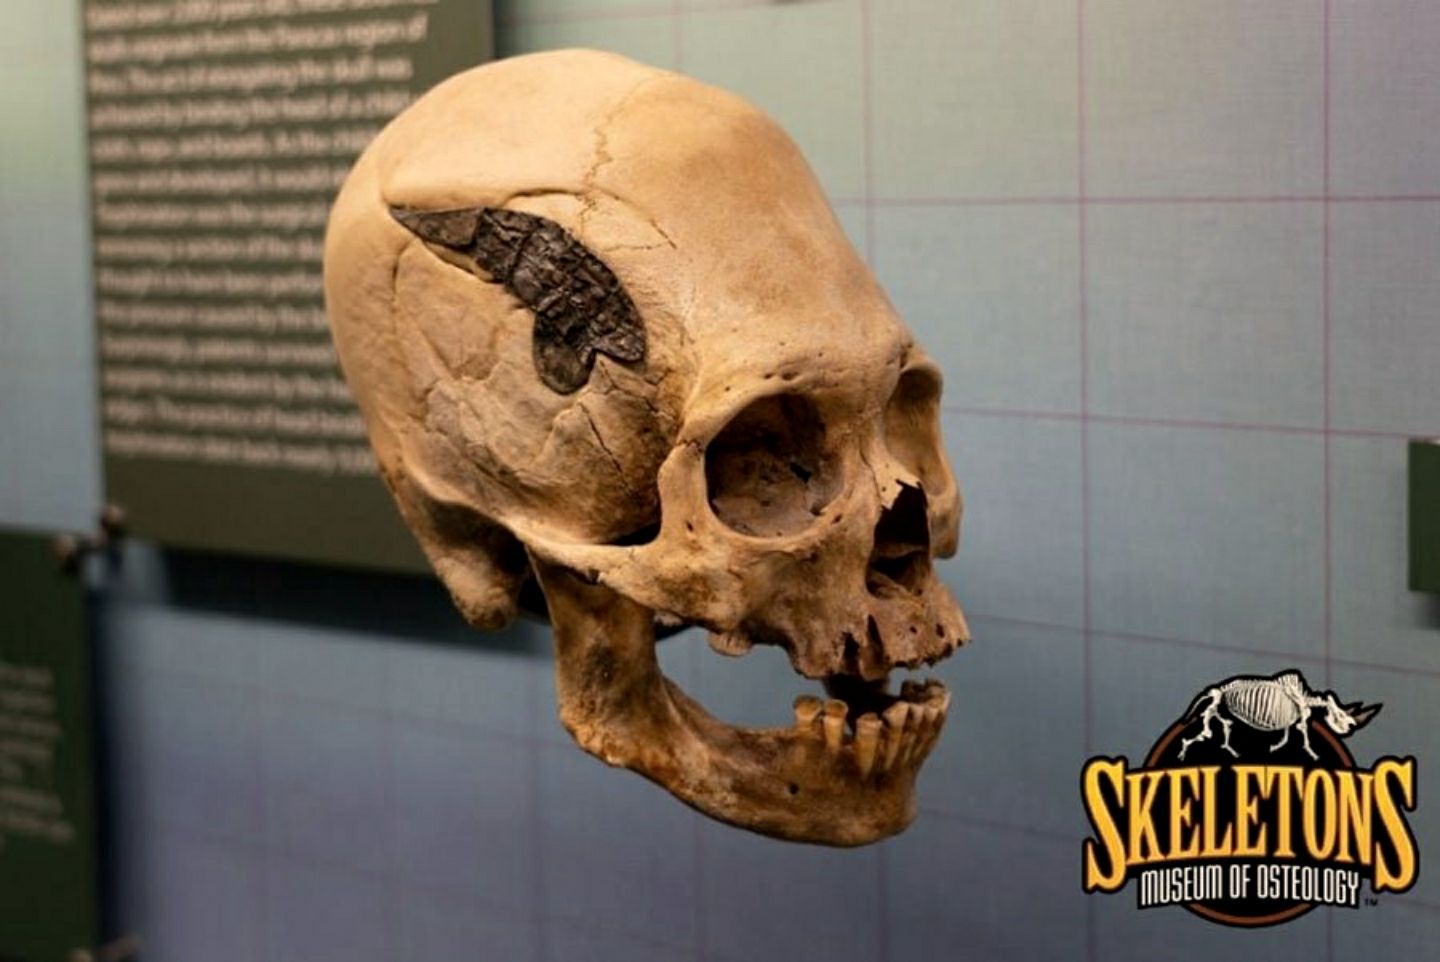 Този череп от Перу има метален имплант. Ако е автентичен, това би било потенциално уникална находка от древните Анди.